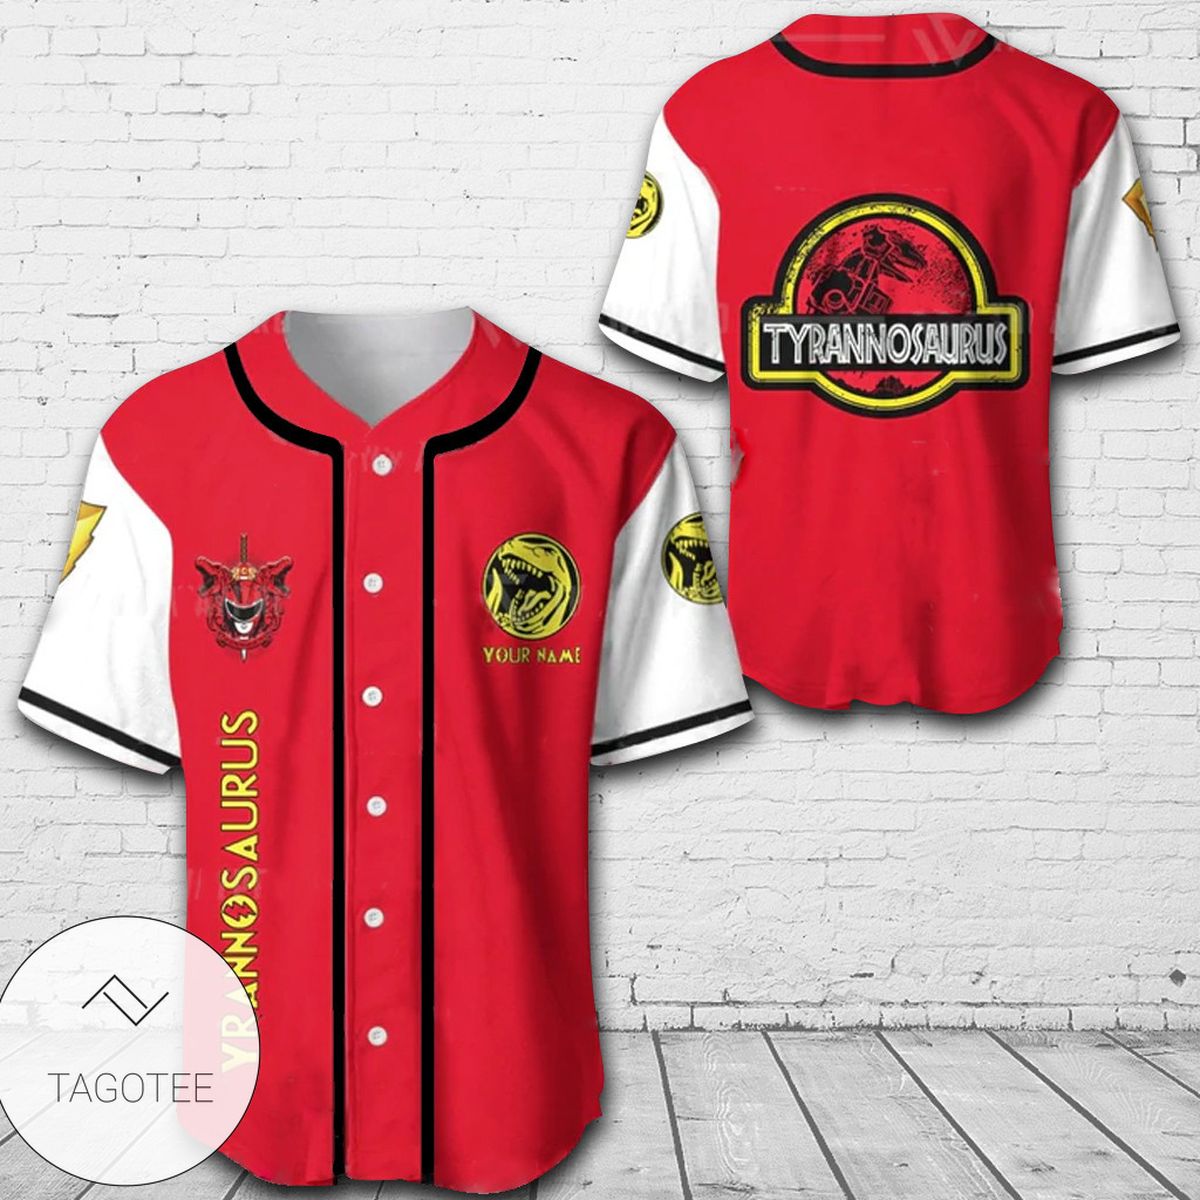 Personalized Tyrannosaurus Baseball Jersey